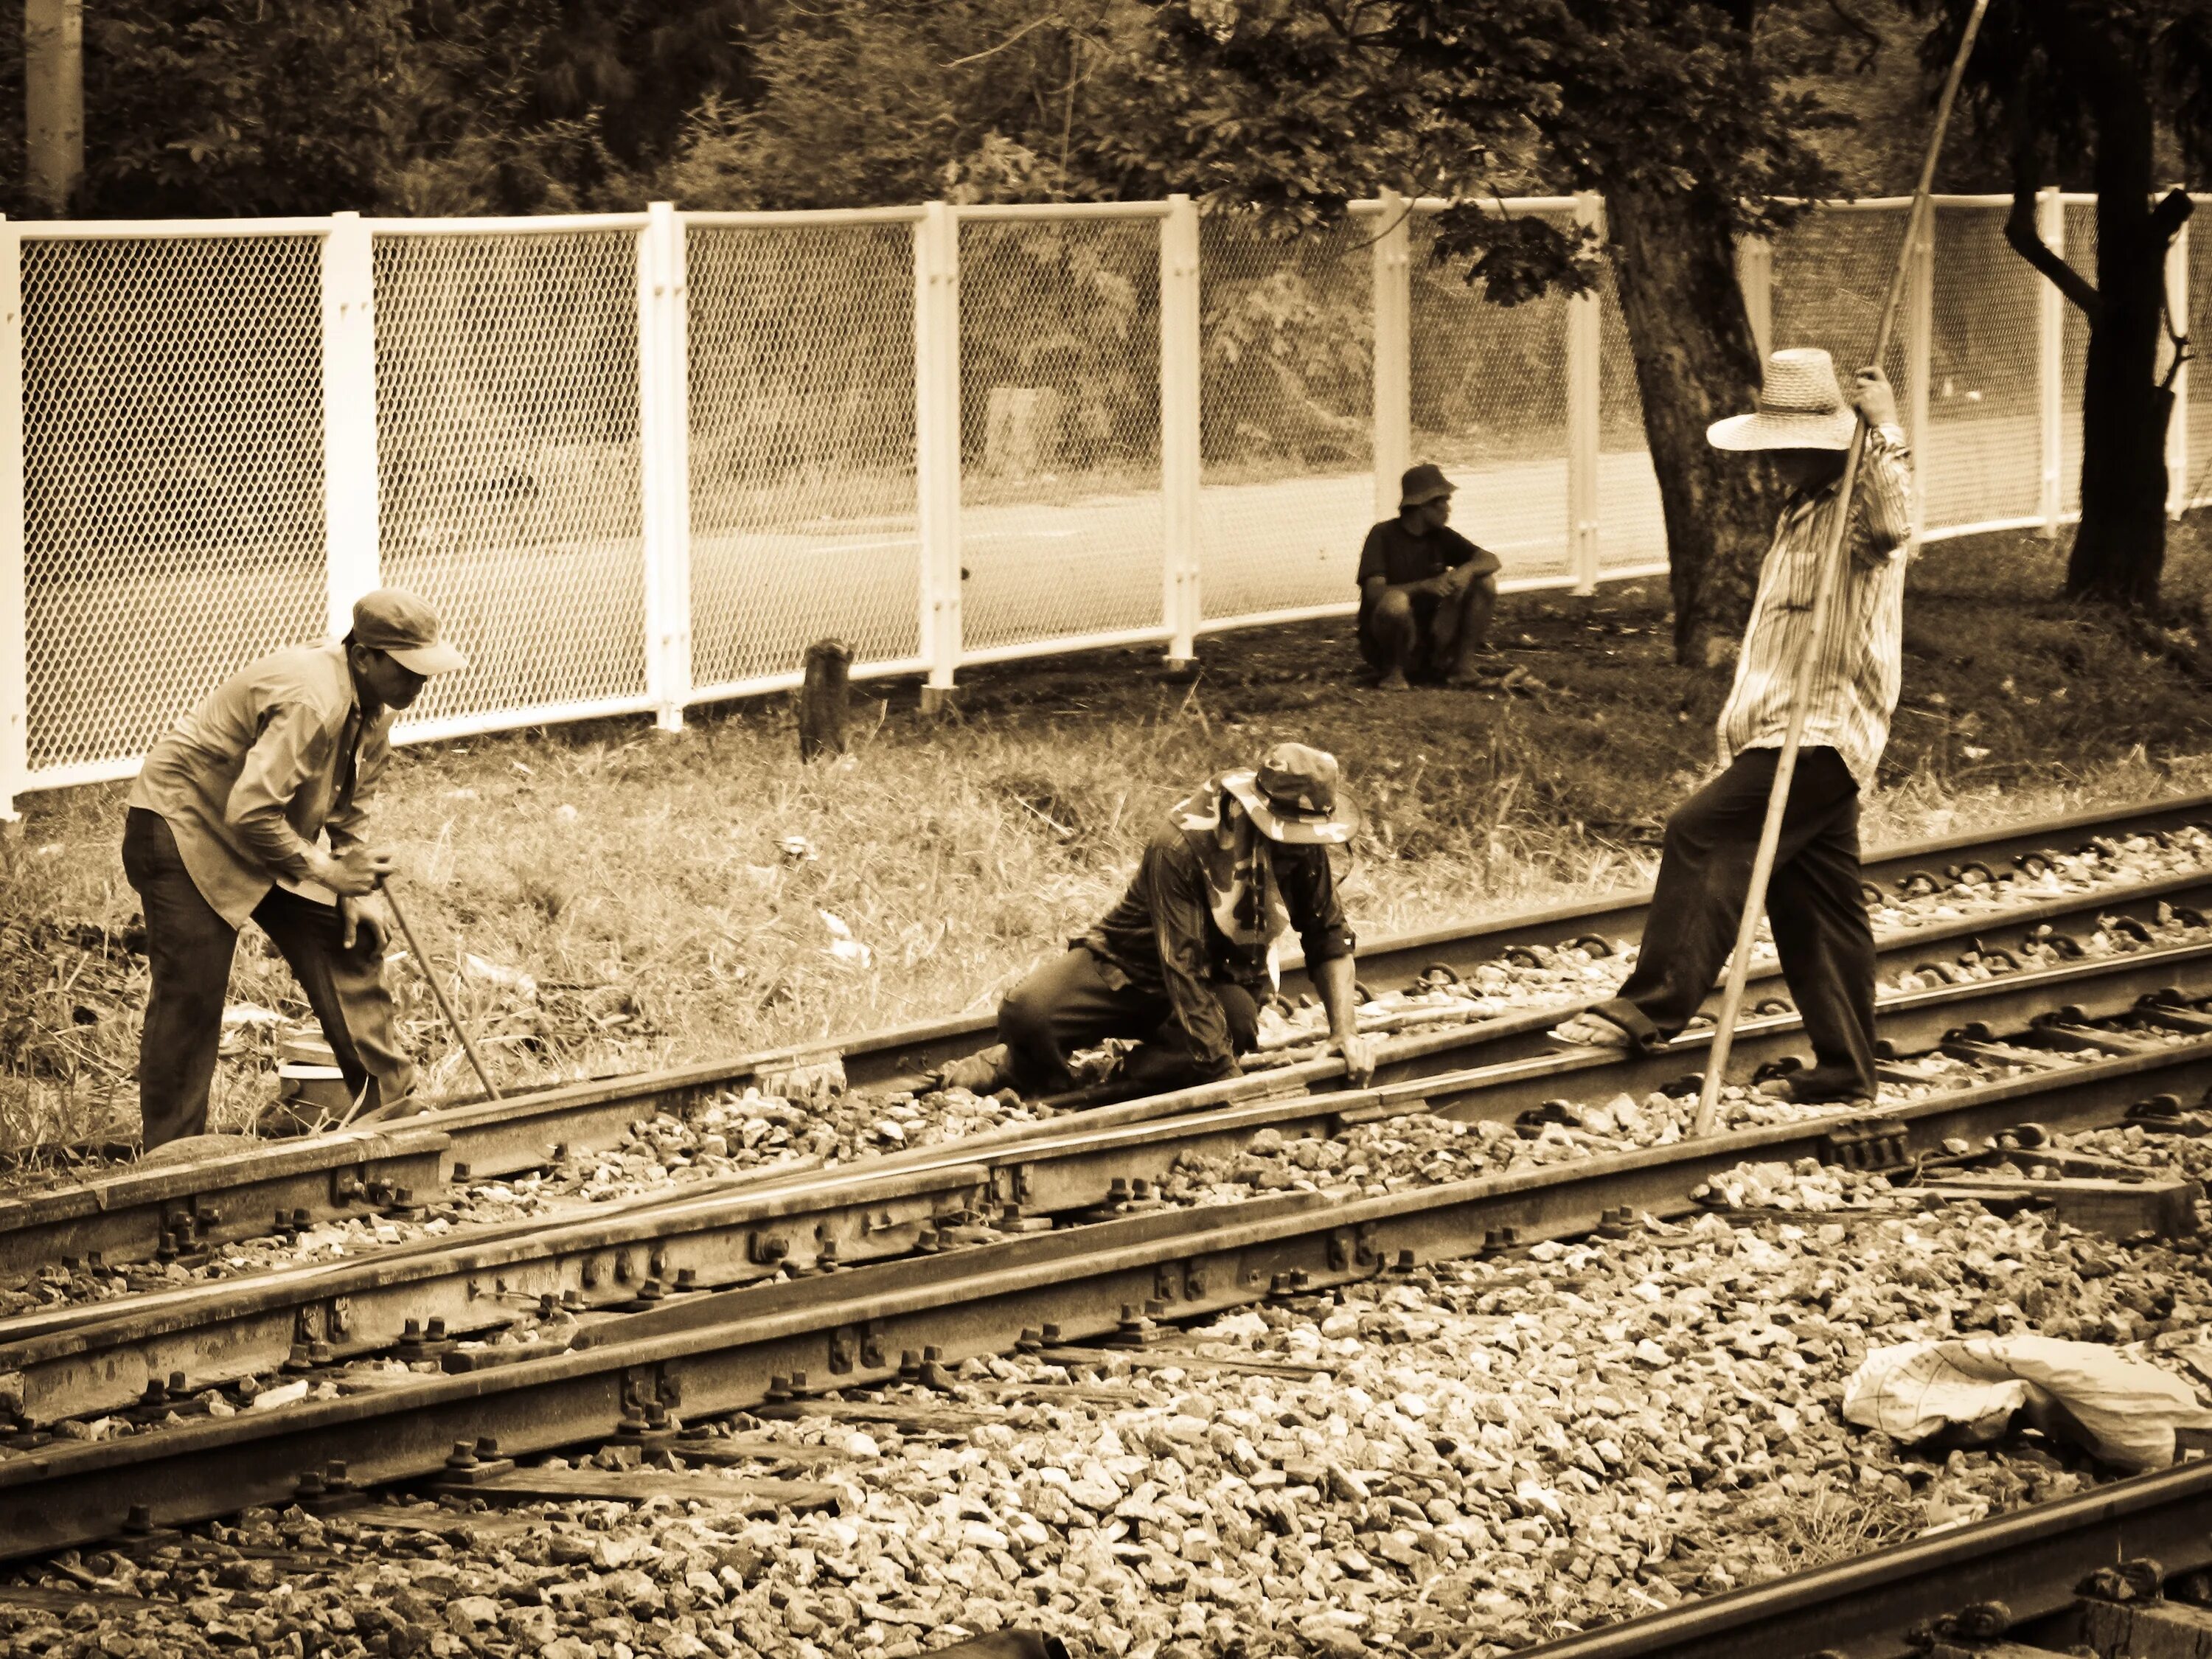 We that he the train. Рабочие на железной дороге. Интересные фото на железной дороге. Железная дорога в Таиланде. Картинки на рабочий поезда.